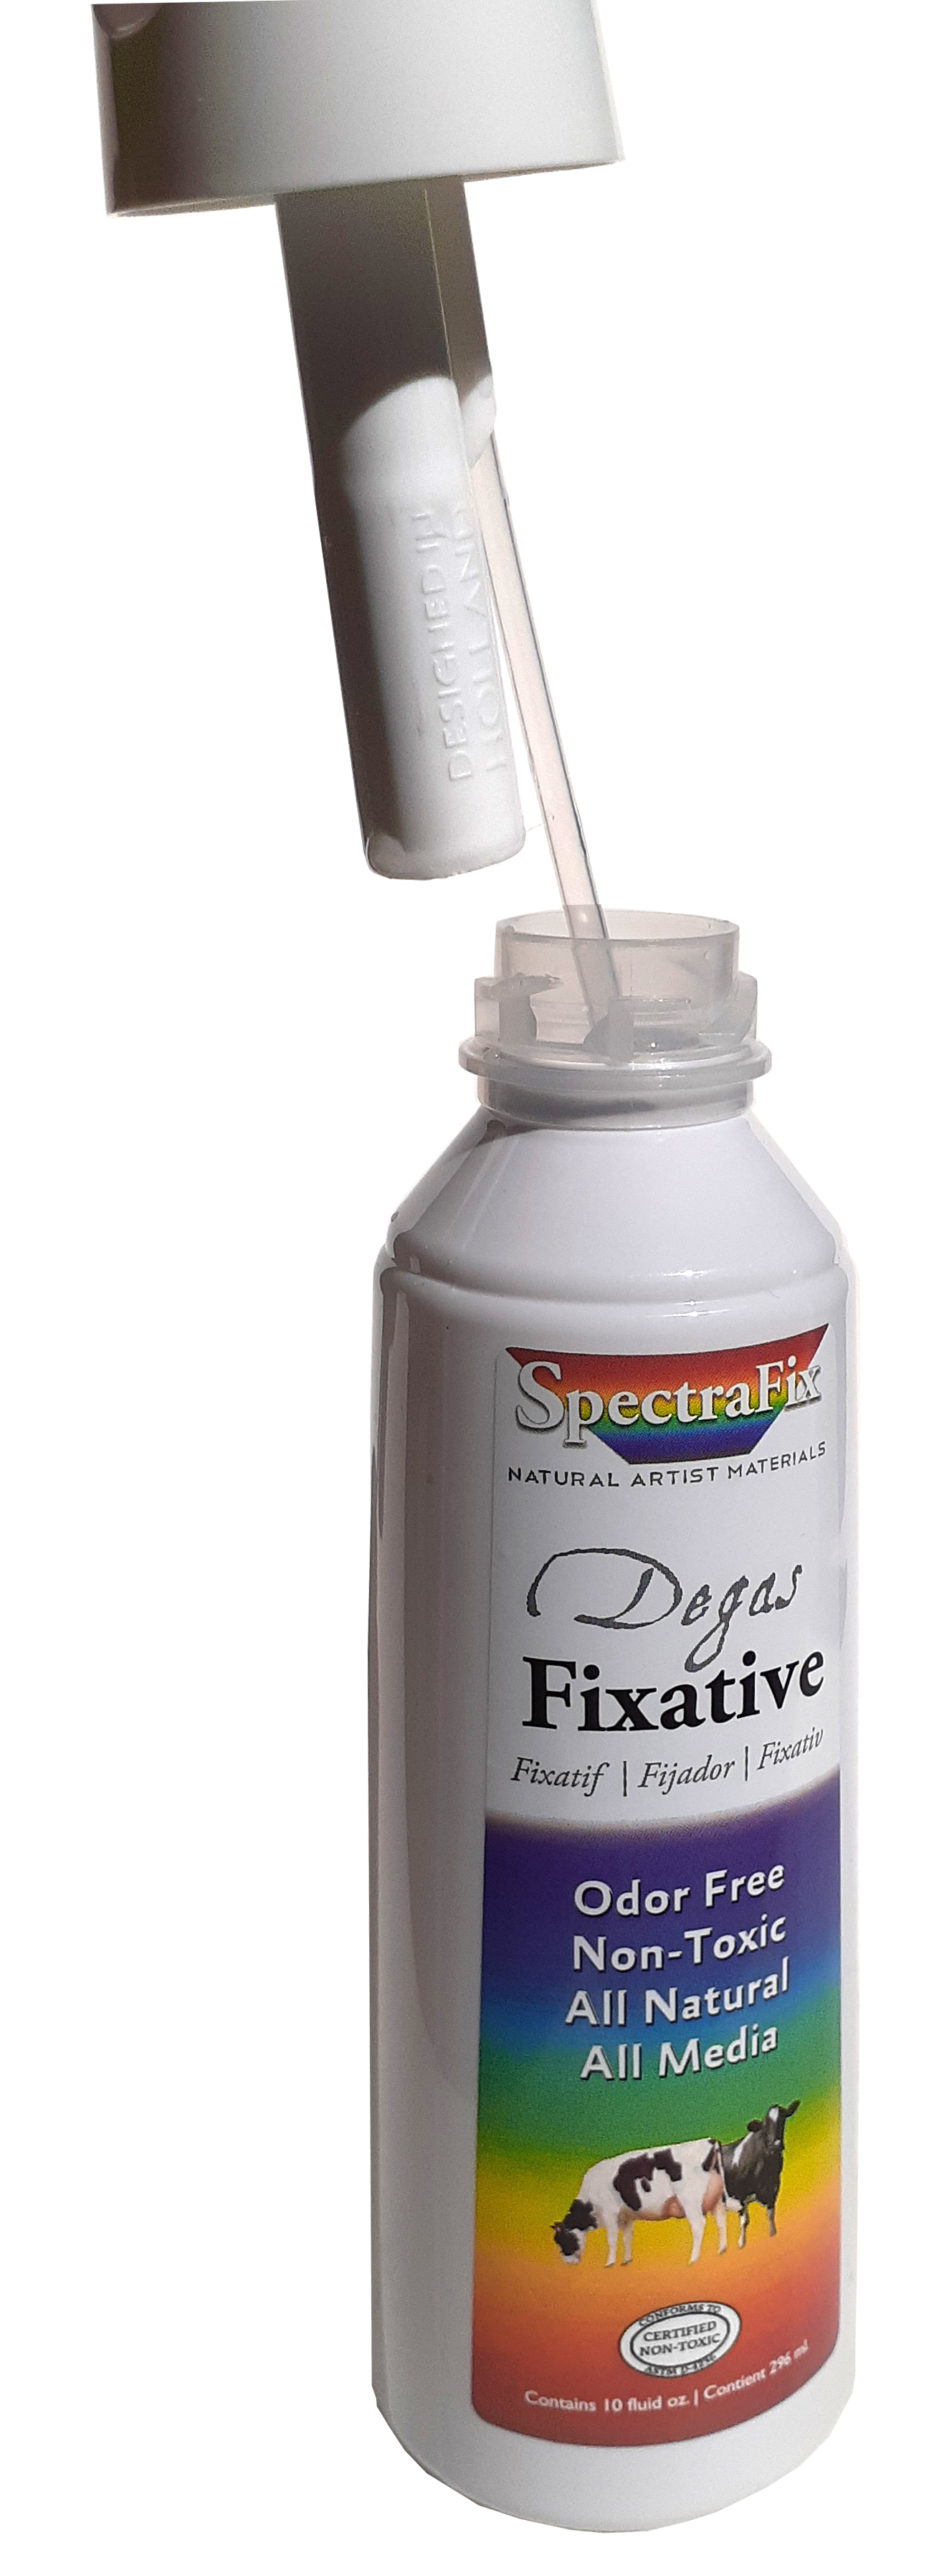 Spectrafix Spray Fixative - 12 oz